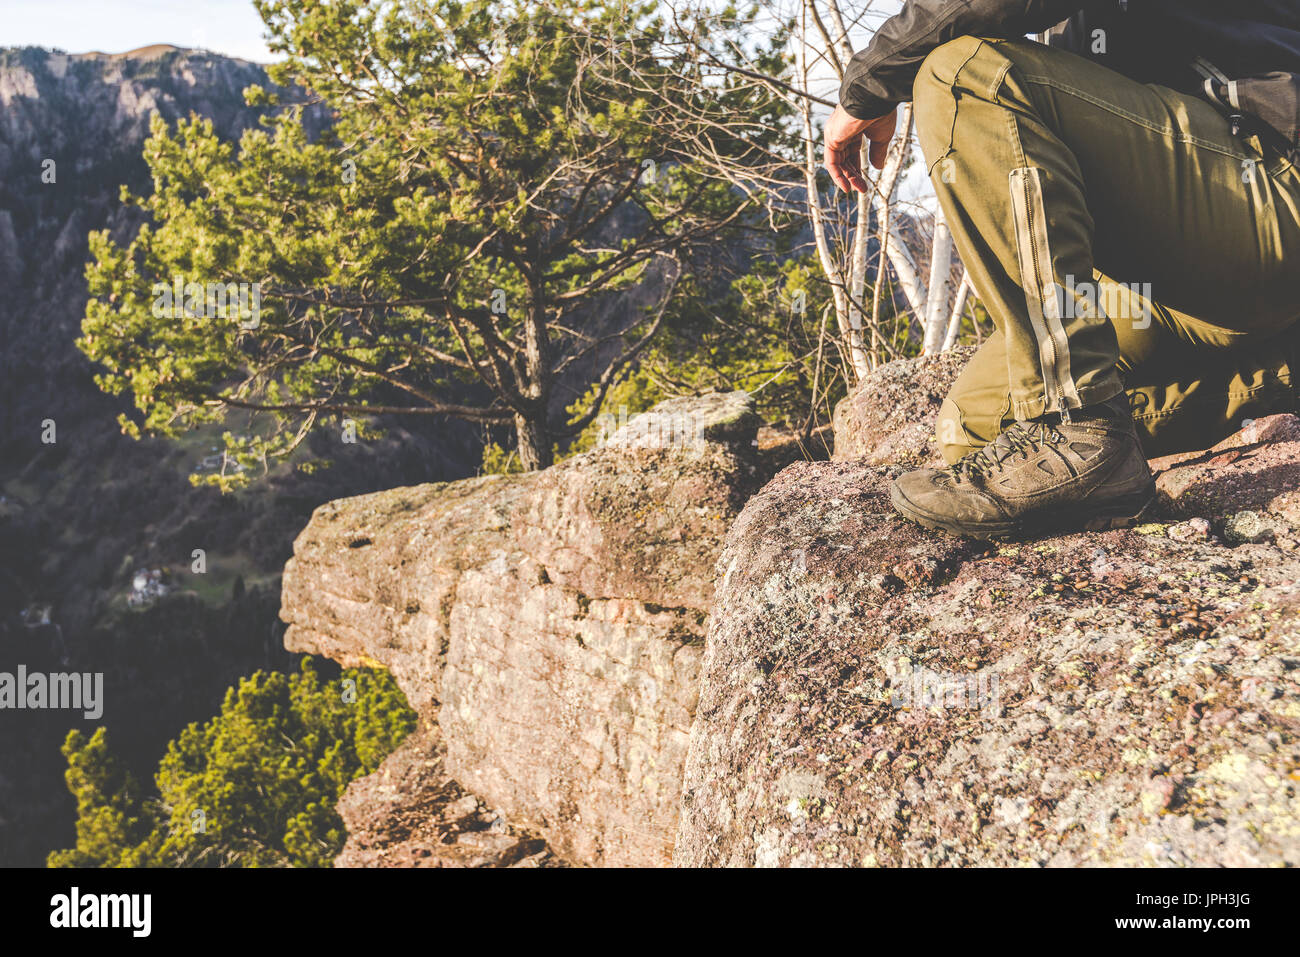 Wanderer auf den Felsen stehen und betrachtet einen schönen Berg-Landschaft - Fernweh Reisekonzept mit sportlichen Menschen auf der Exkursion in wilder Natur Stockfoto